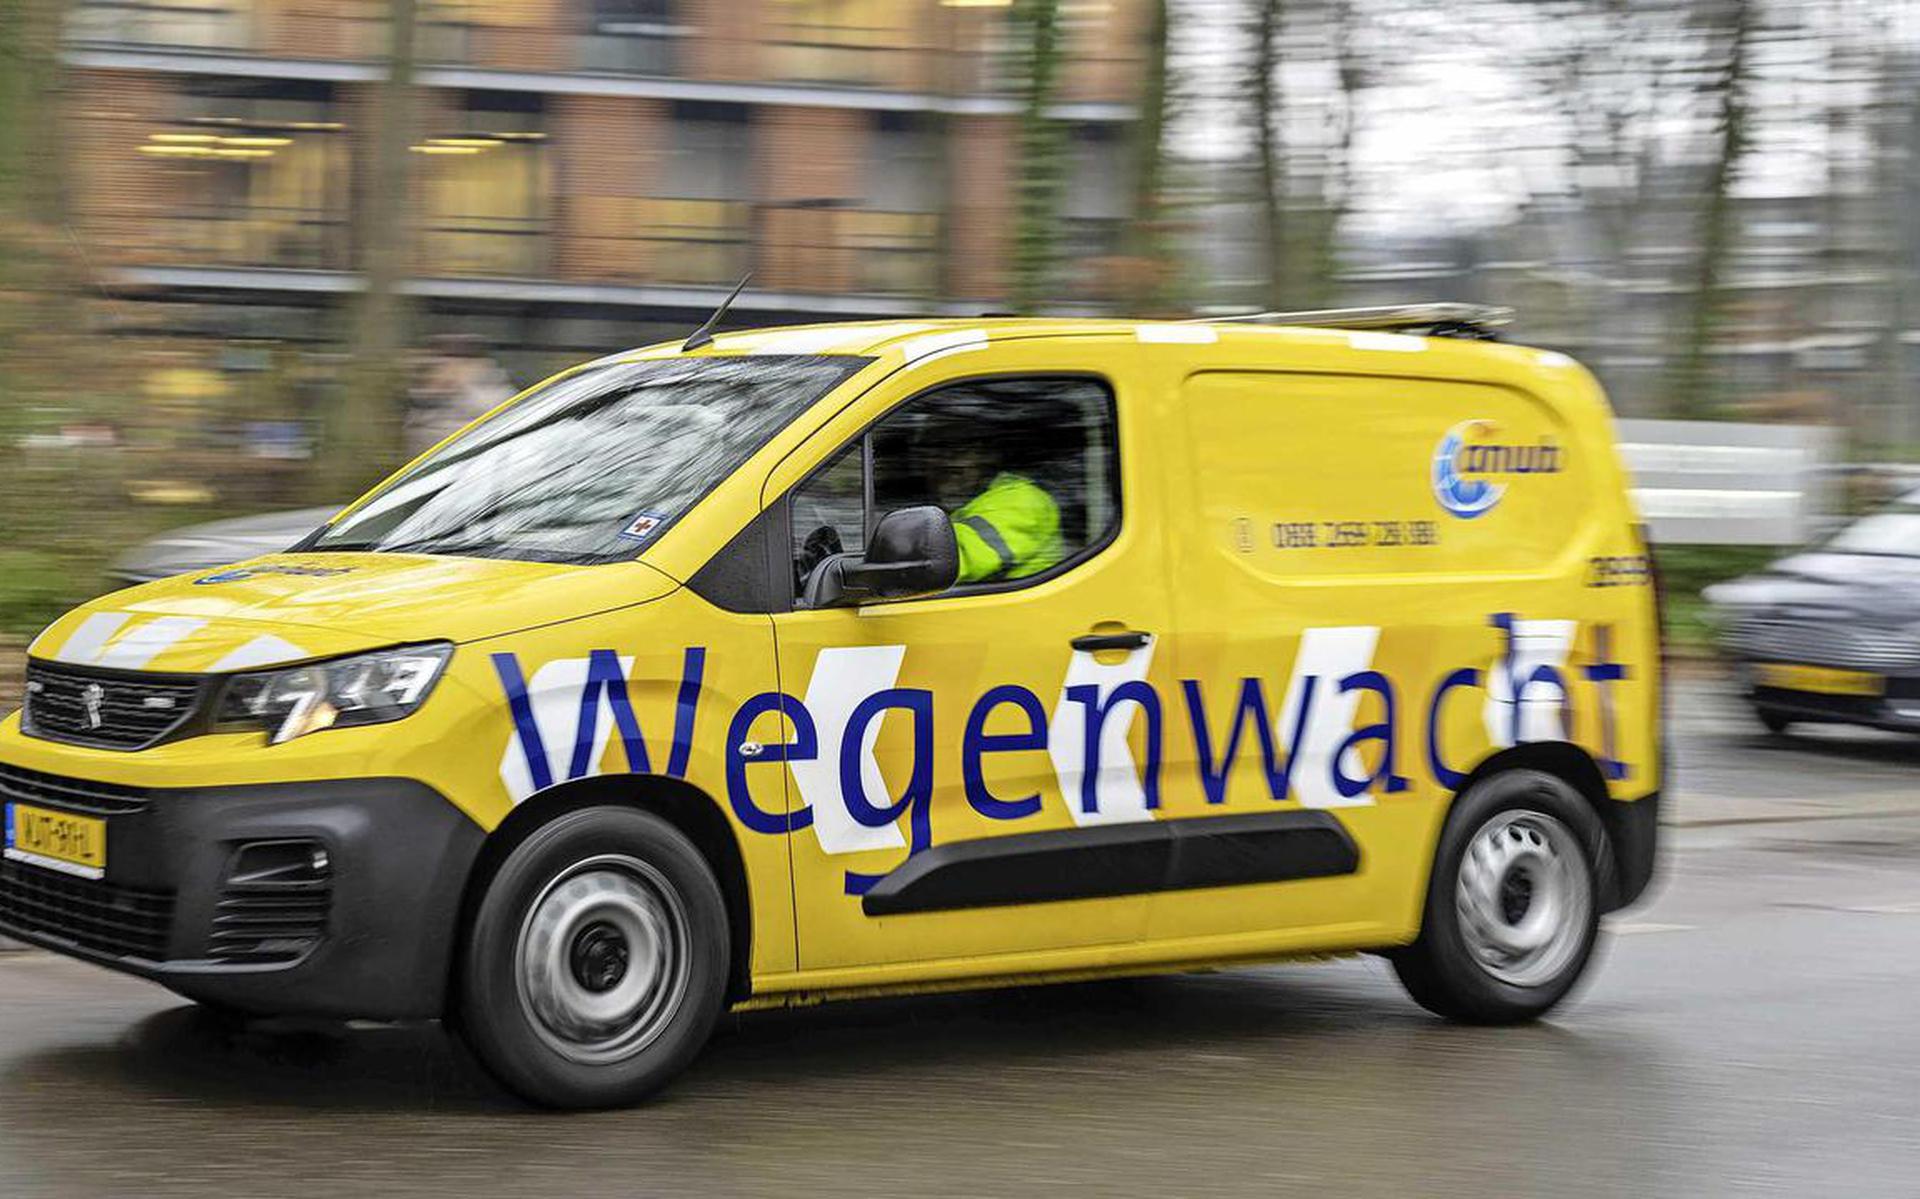 Wie met pech langs de weg de Wegenwacht belt, mag niet verplicht worden om ter plekke een verzekering voor een jaar af te sluiten